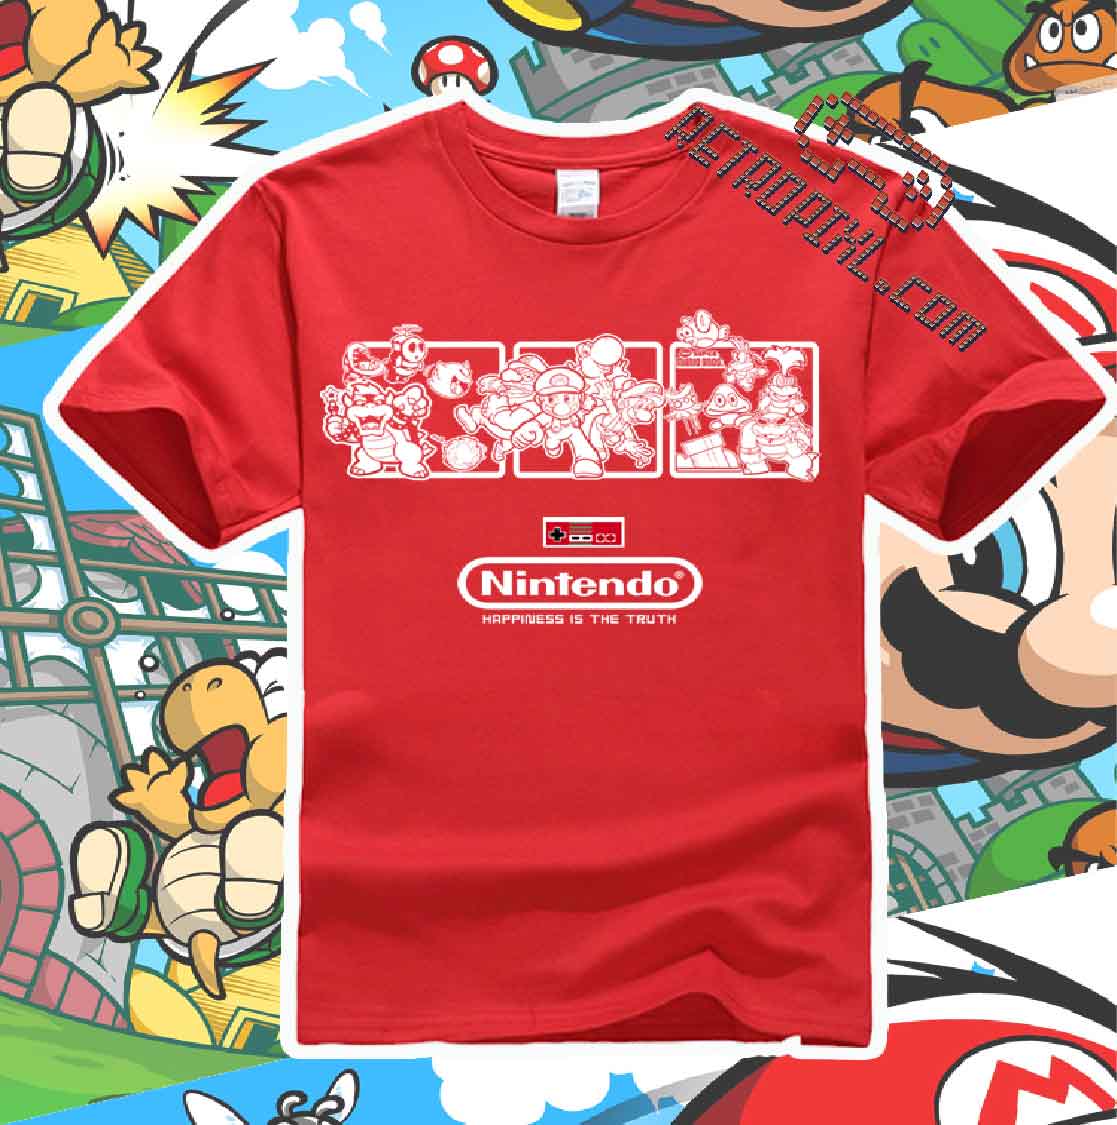 RetroPixl Retro Goodies retrogaming Mario T-shirt Tshirt